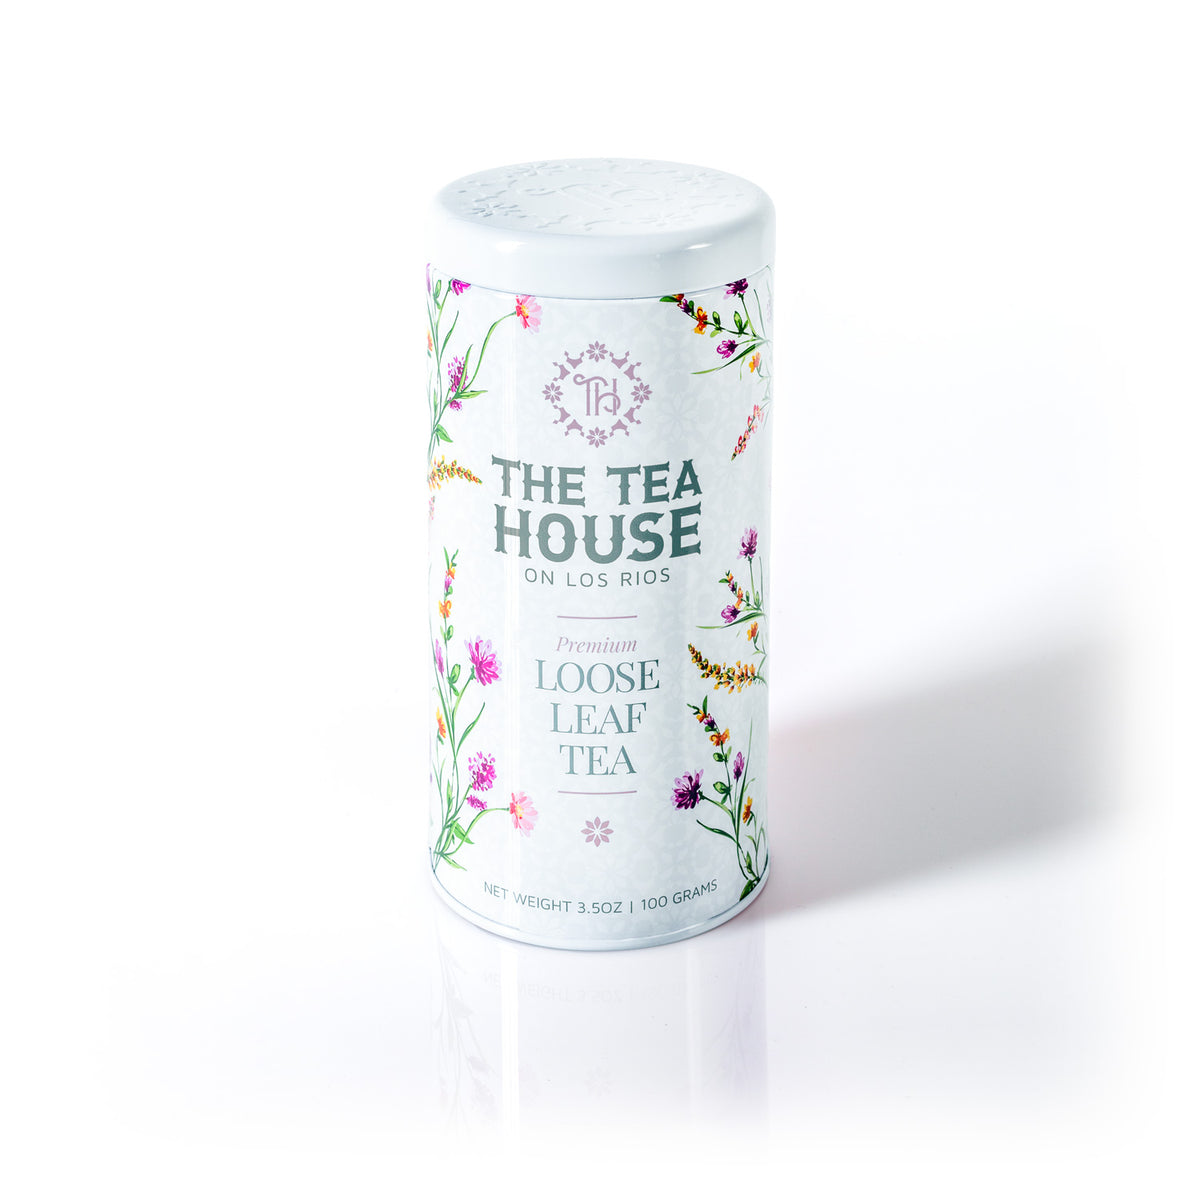 The Tea House on Los Rios introduces a 100g Loose Leaf Tea Tin